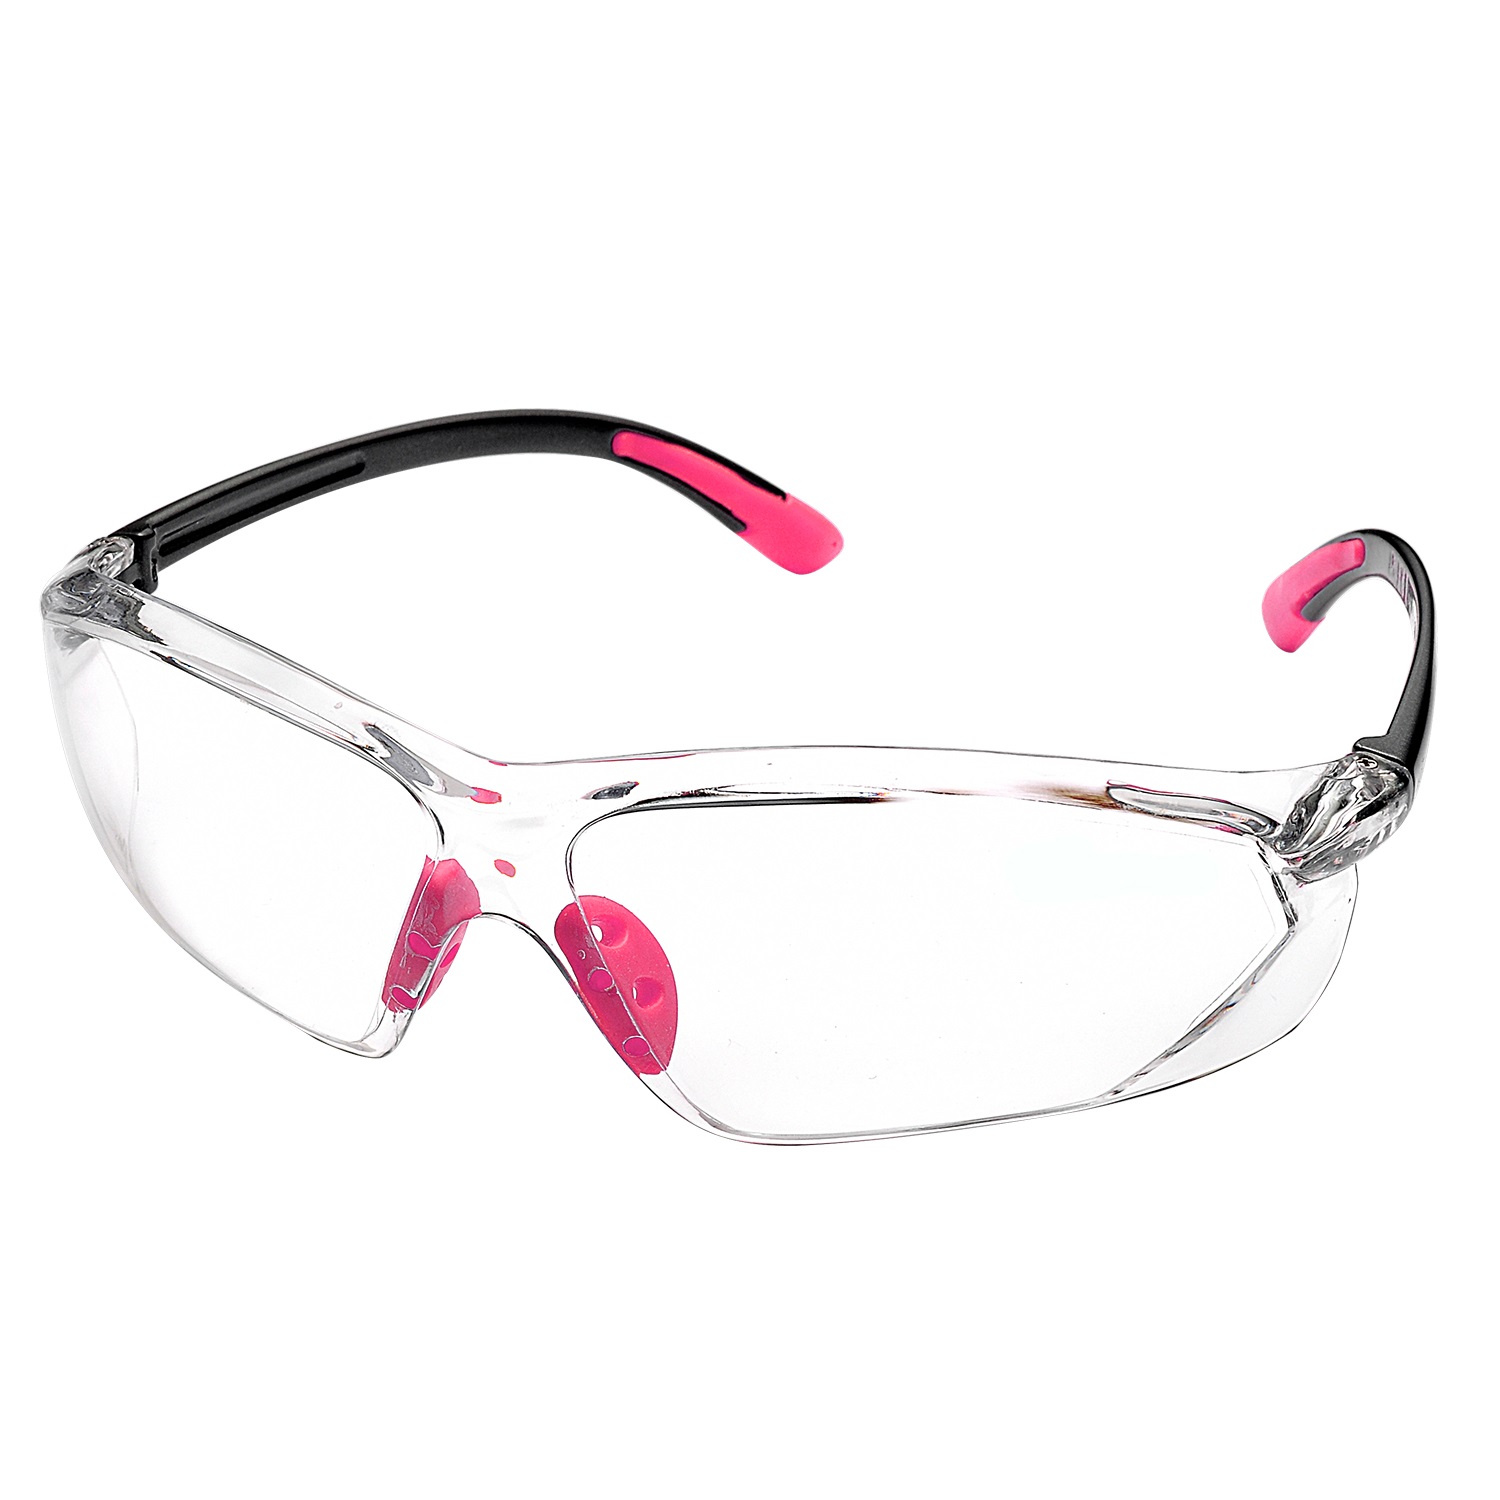 Lady Design Gafas protectoras de seguridad SG003 Rosa